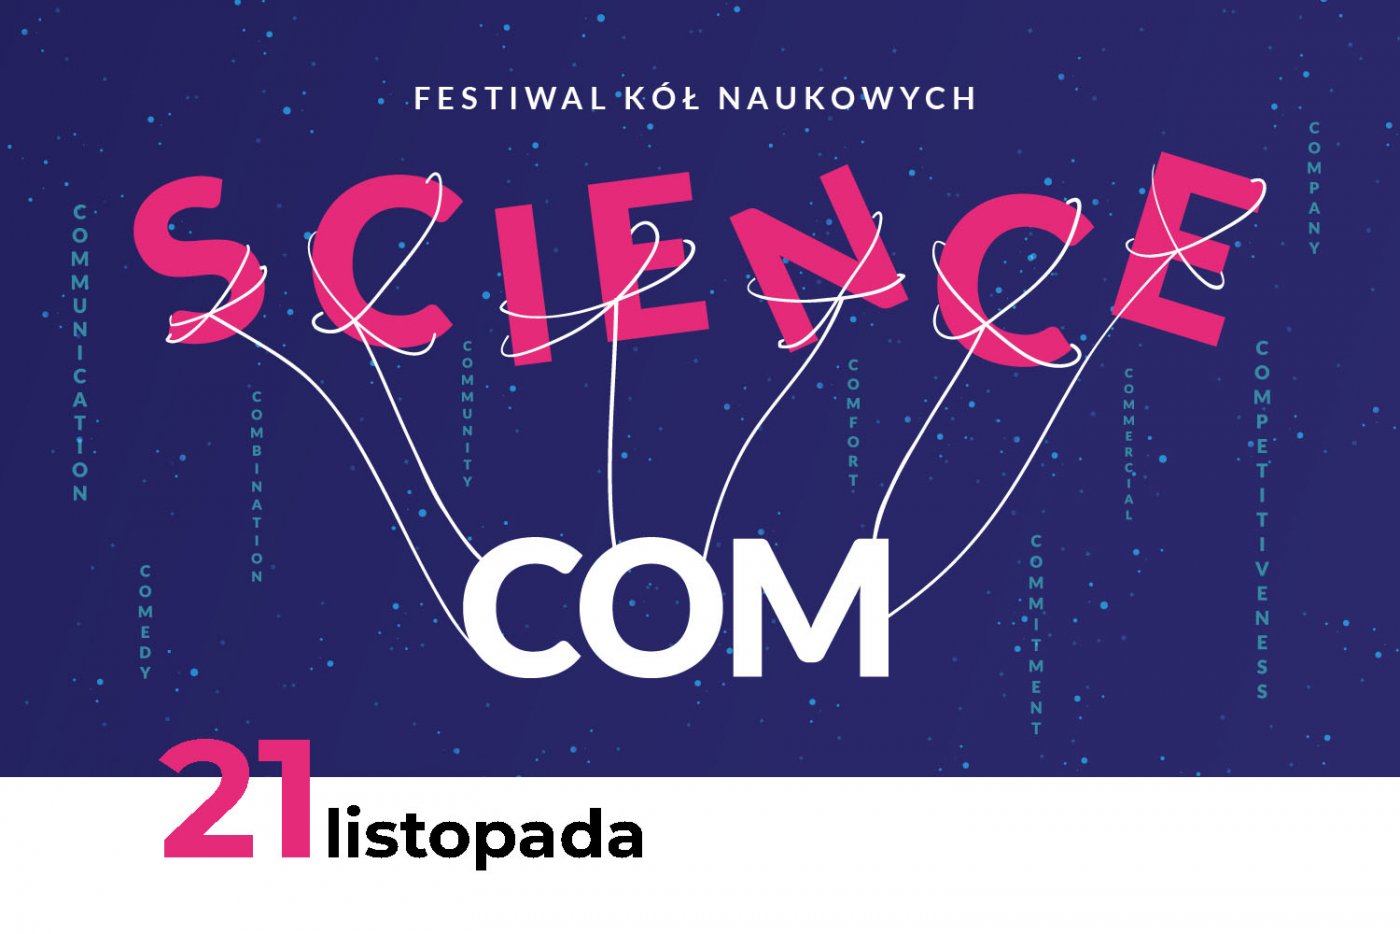 Plakat ScienceCom 2020 w EXPERYMENCIE, która odbędzie się 21 listopada.